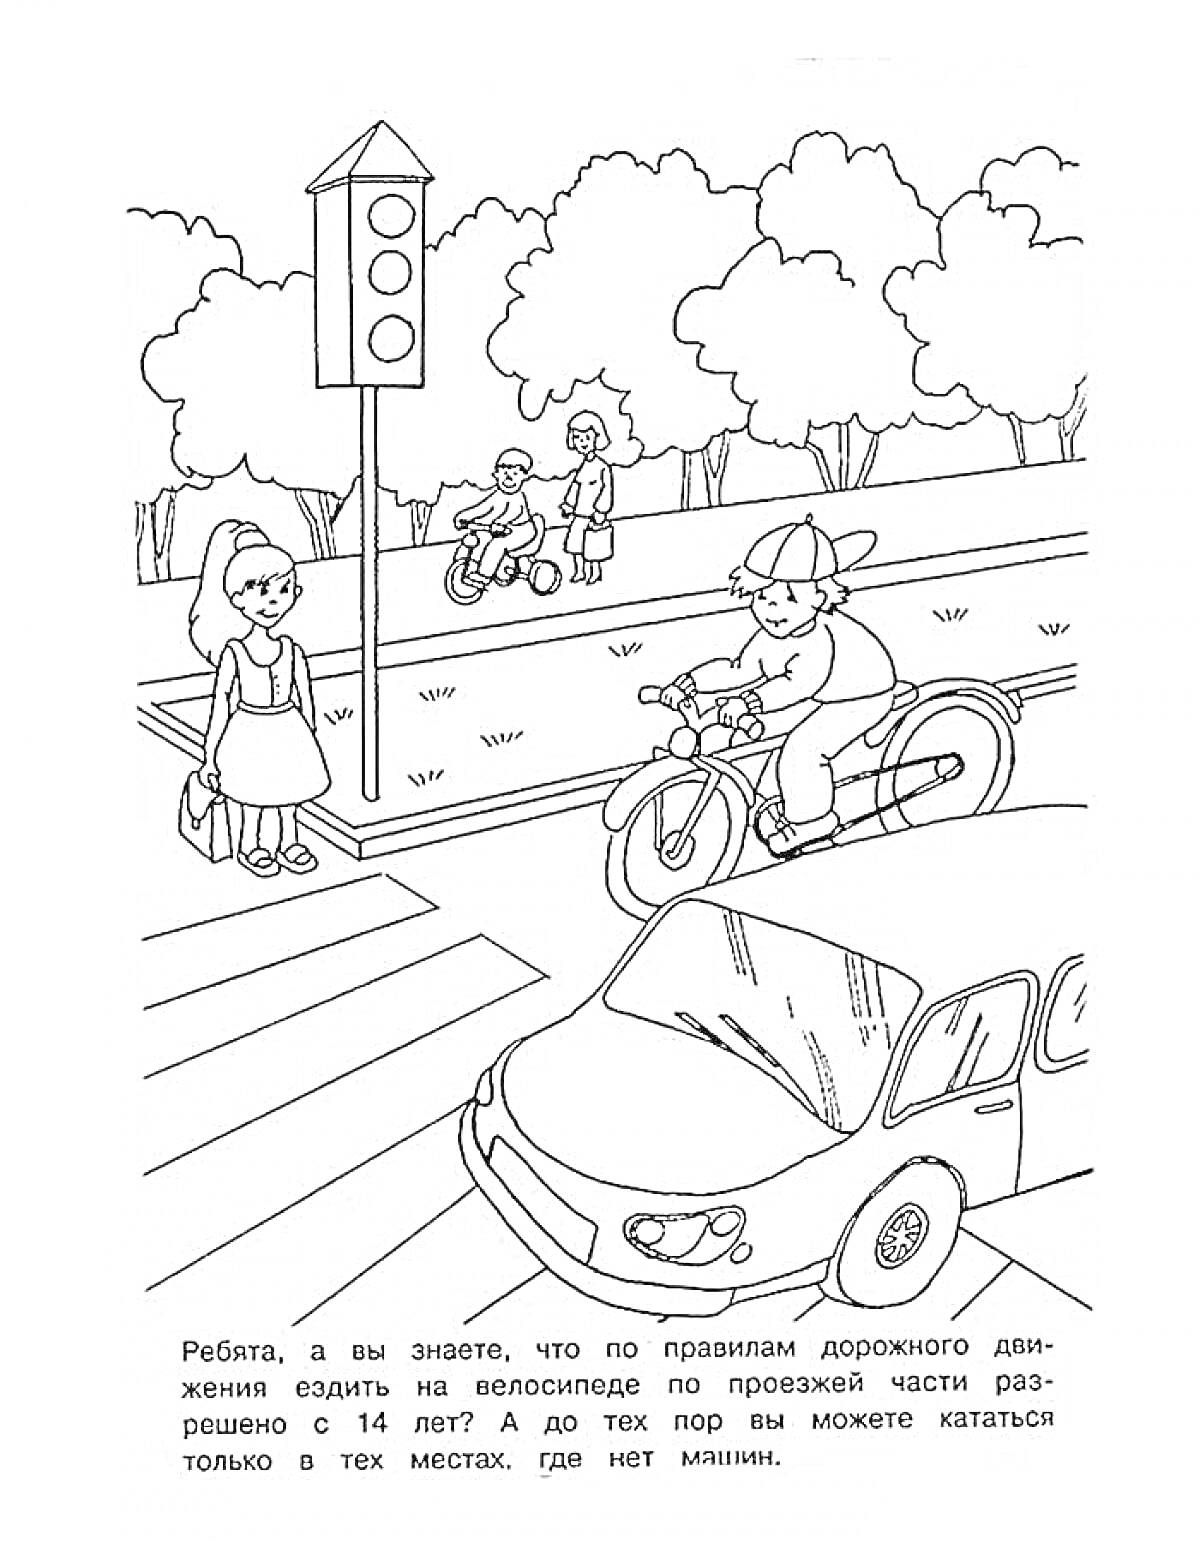 Пешеходный переход с велосипедистом, автомобилем и светофором, переходящая дорогу девочка, велосипедисты в парке